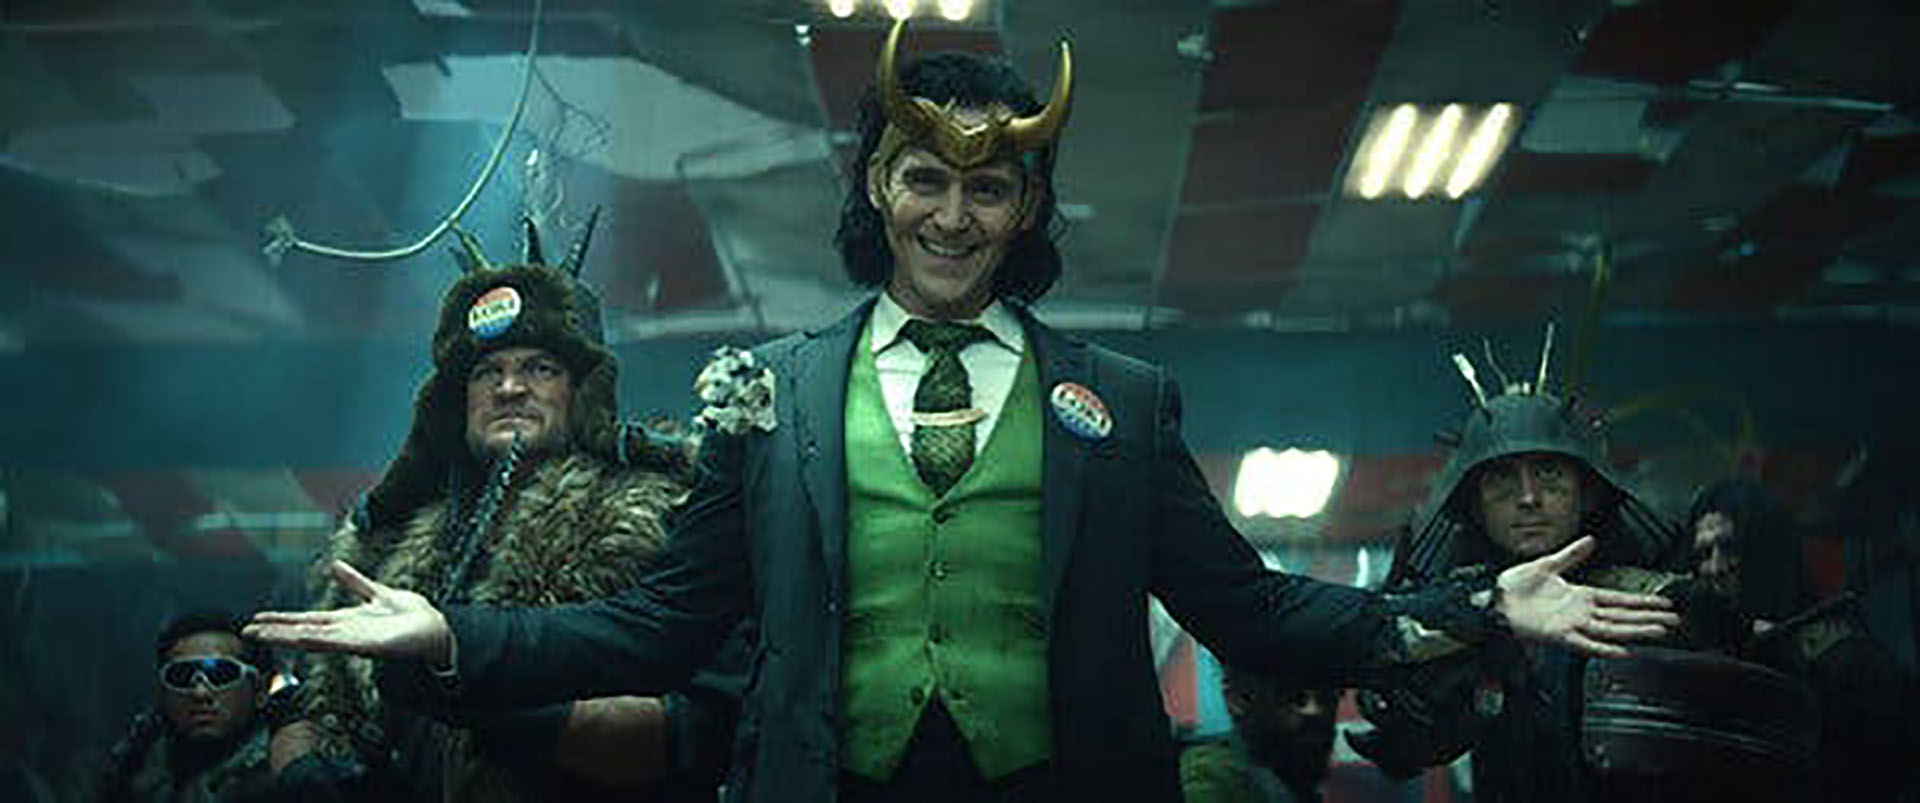 La bisexualidad de Loki fue apenas sugerida en la serie de Disney+, provocando críticas de militantes LGBT+ (Marvel/Disney+).